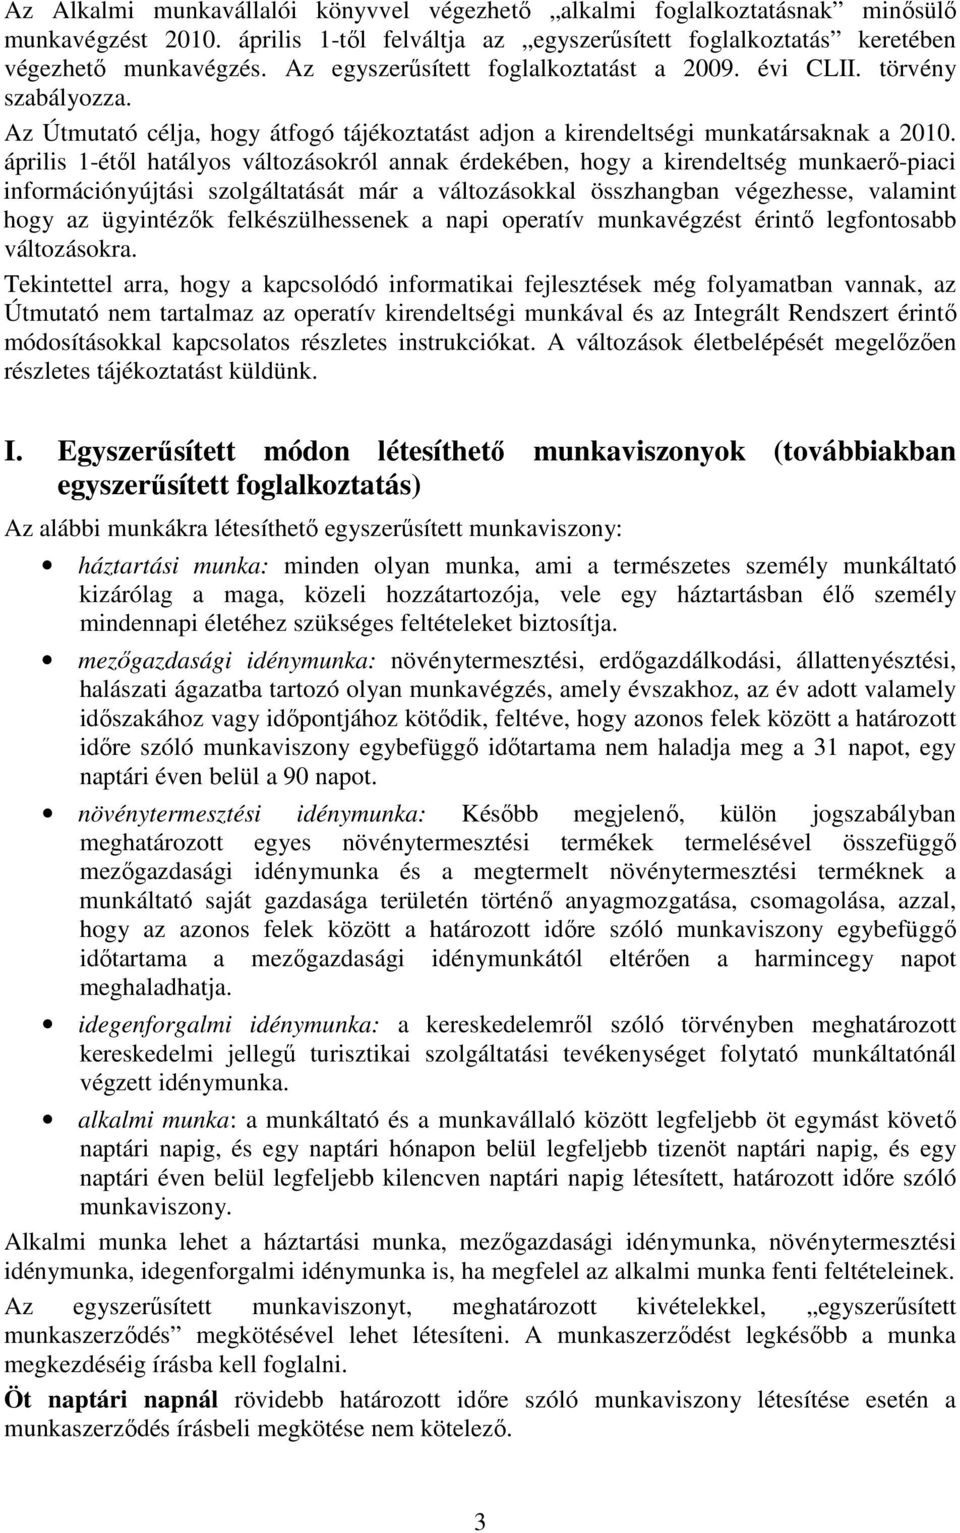 április 1-étıl hatályos változásokról annak érdekében, hogy a kirendeltség munkaerı-piaci információnyújtási szolgáltatását már a változásokkal összhangban végezhesse, valamint hogy az ügyintézık